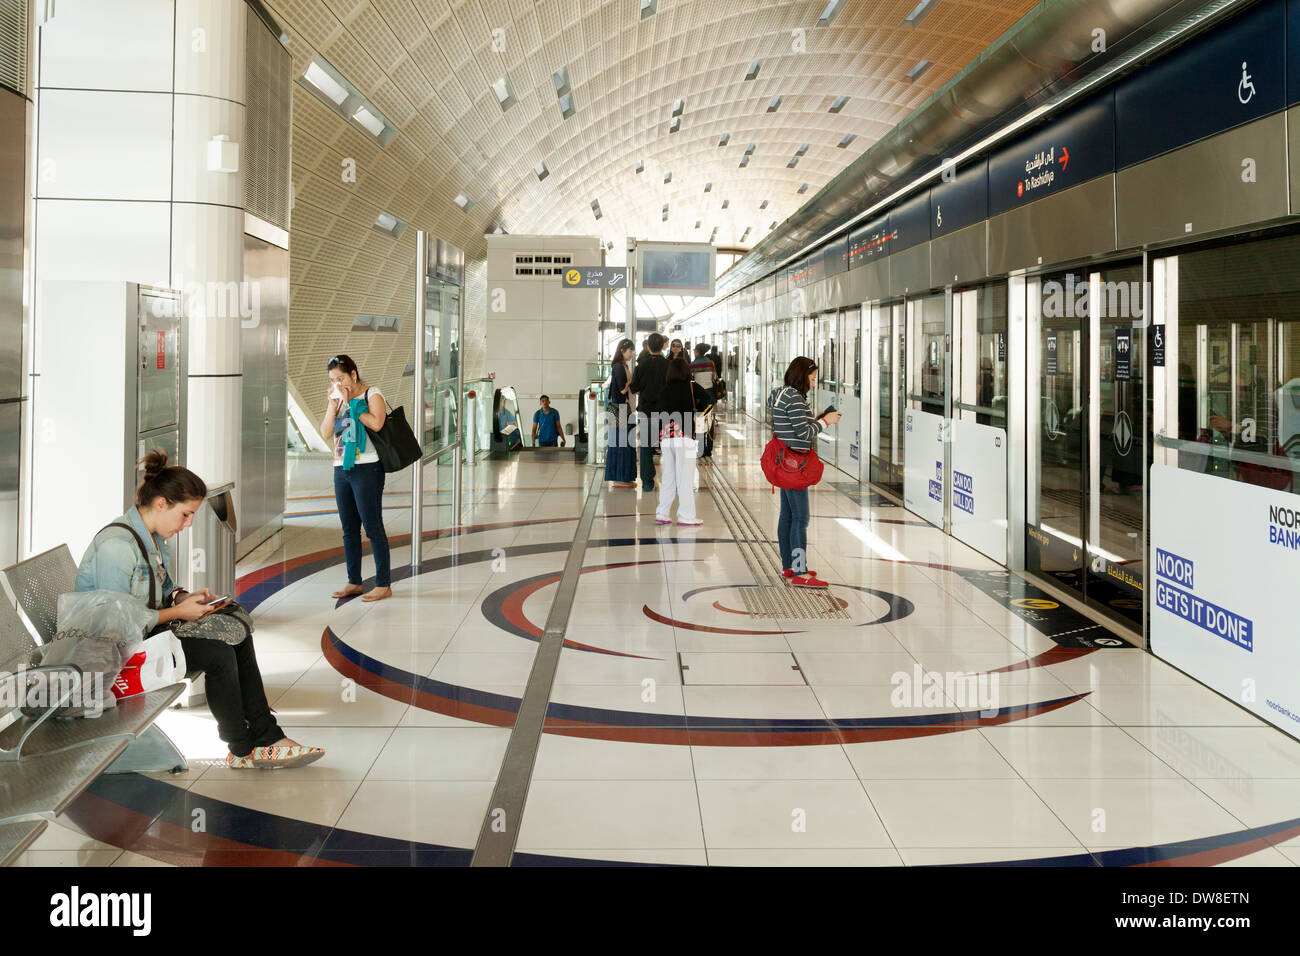 Fahrgäste in der U-Bahnstation warten auf einen Zug, Dubai Metro öffentliches Verkehrssystem, Dubai, VAE, Vereinigte Arabische Emirate, Naher Osten Stockfoto